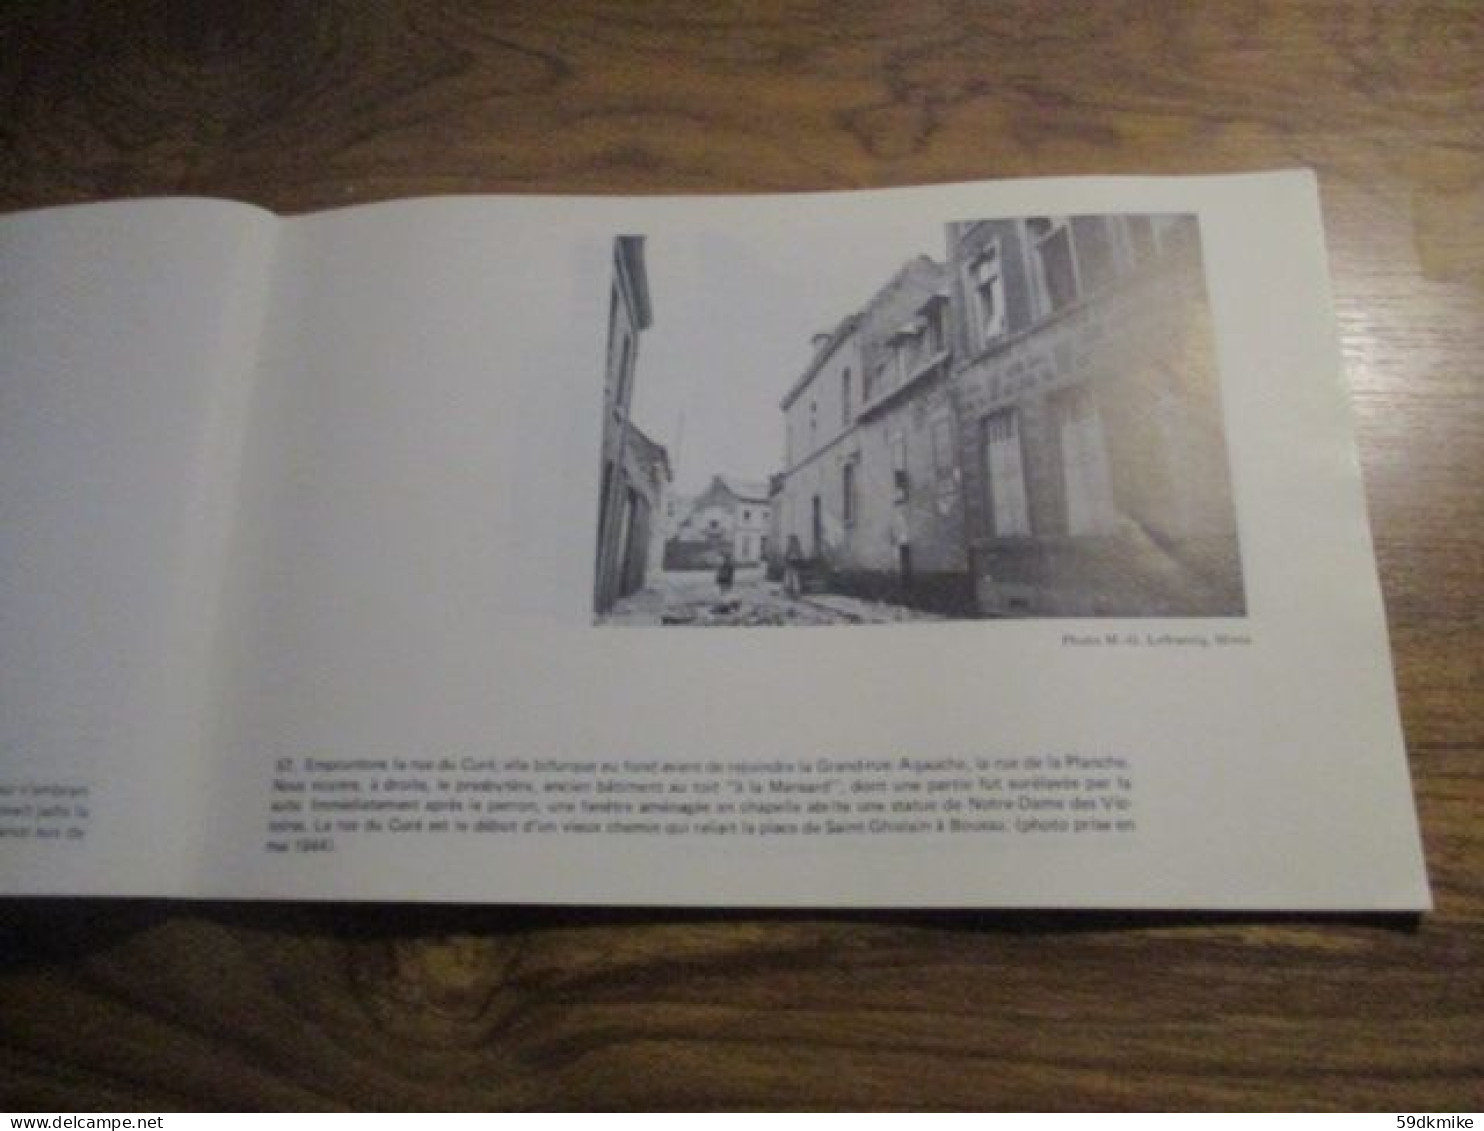 Livret - Saint Ghislain cartes postales D'Autrefois cercle d'histoire et d'archéologie par G. A. Lelièvre - 105 vues